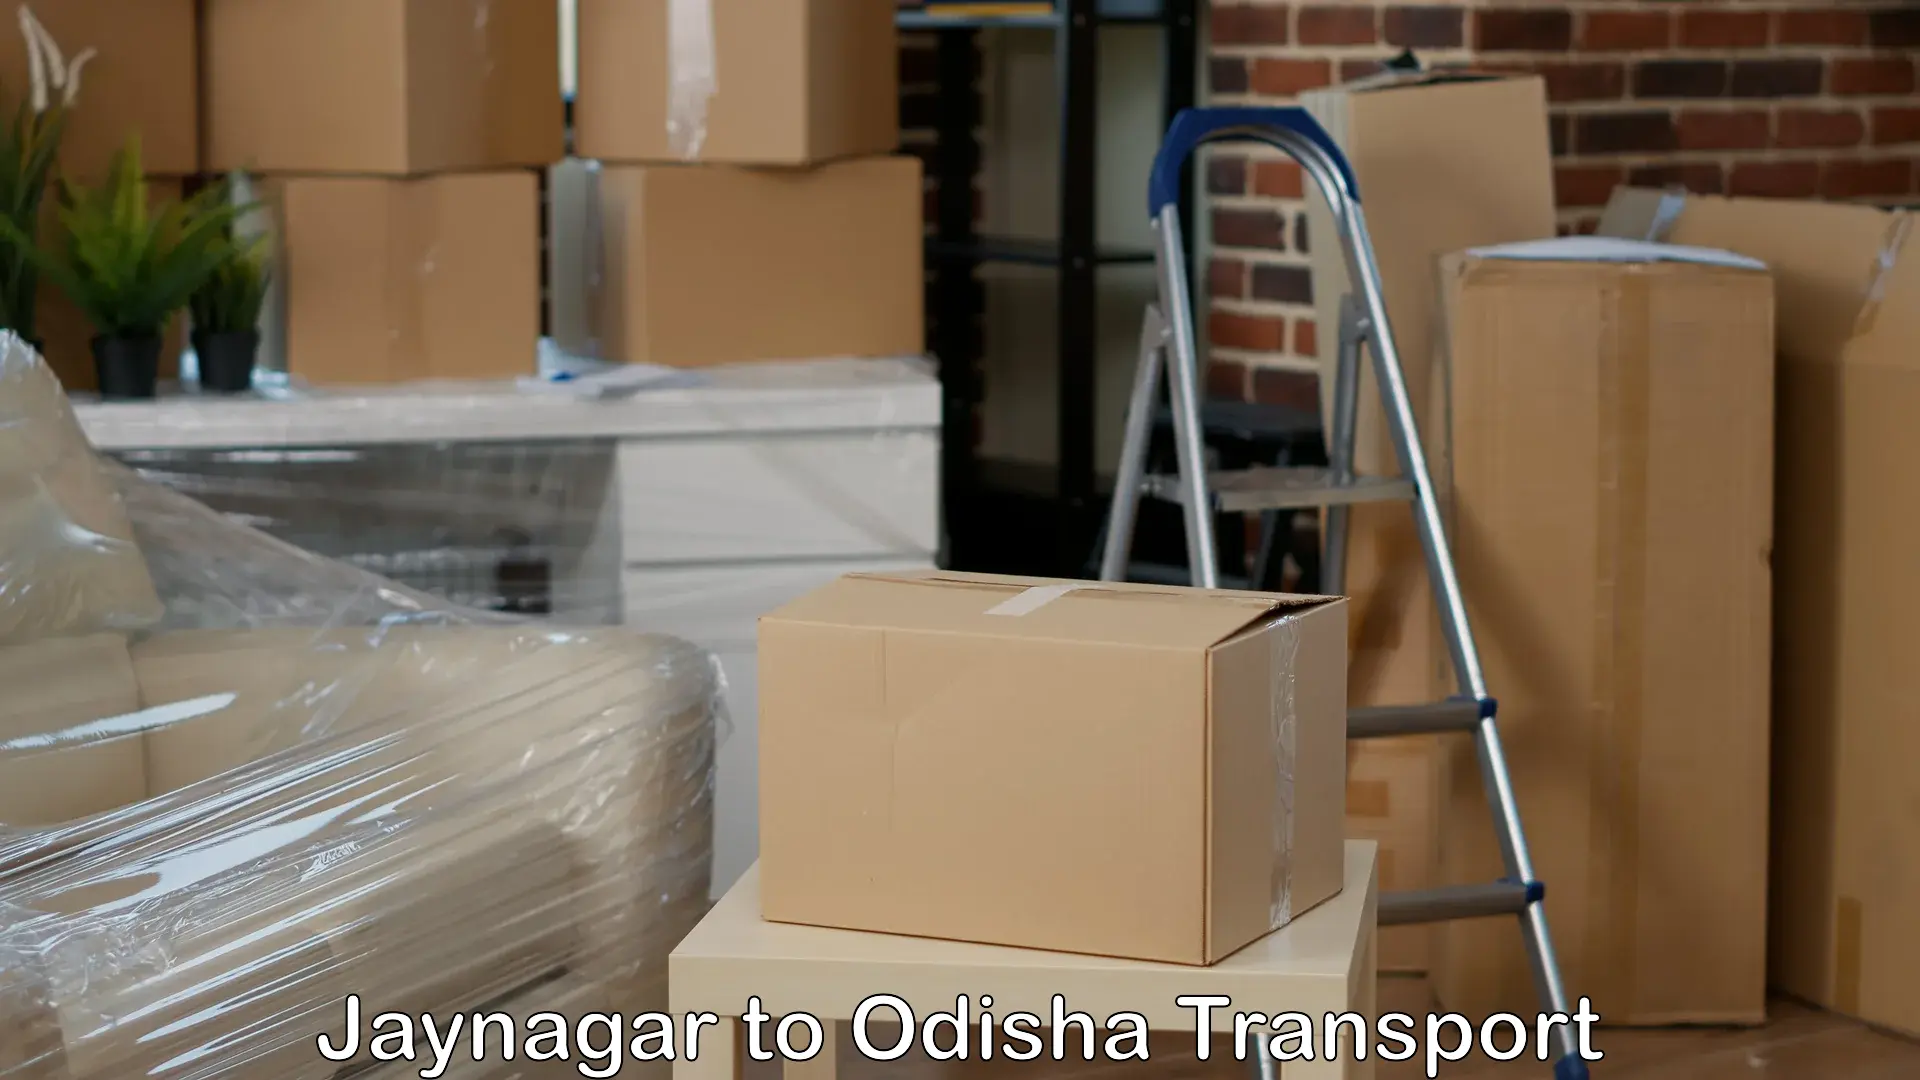 Commercial transport service Jaynagar to Basta